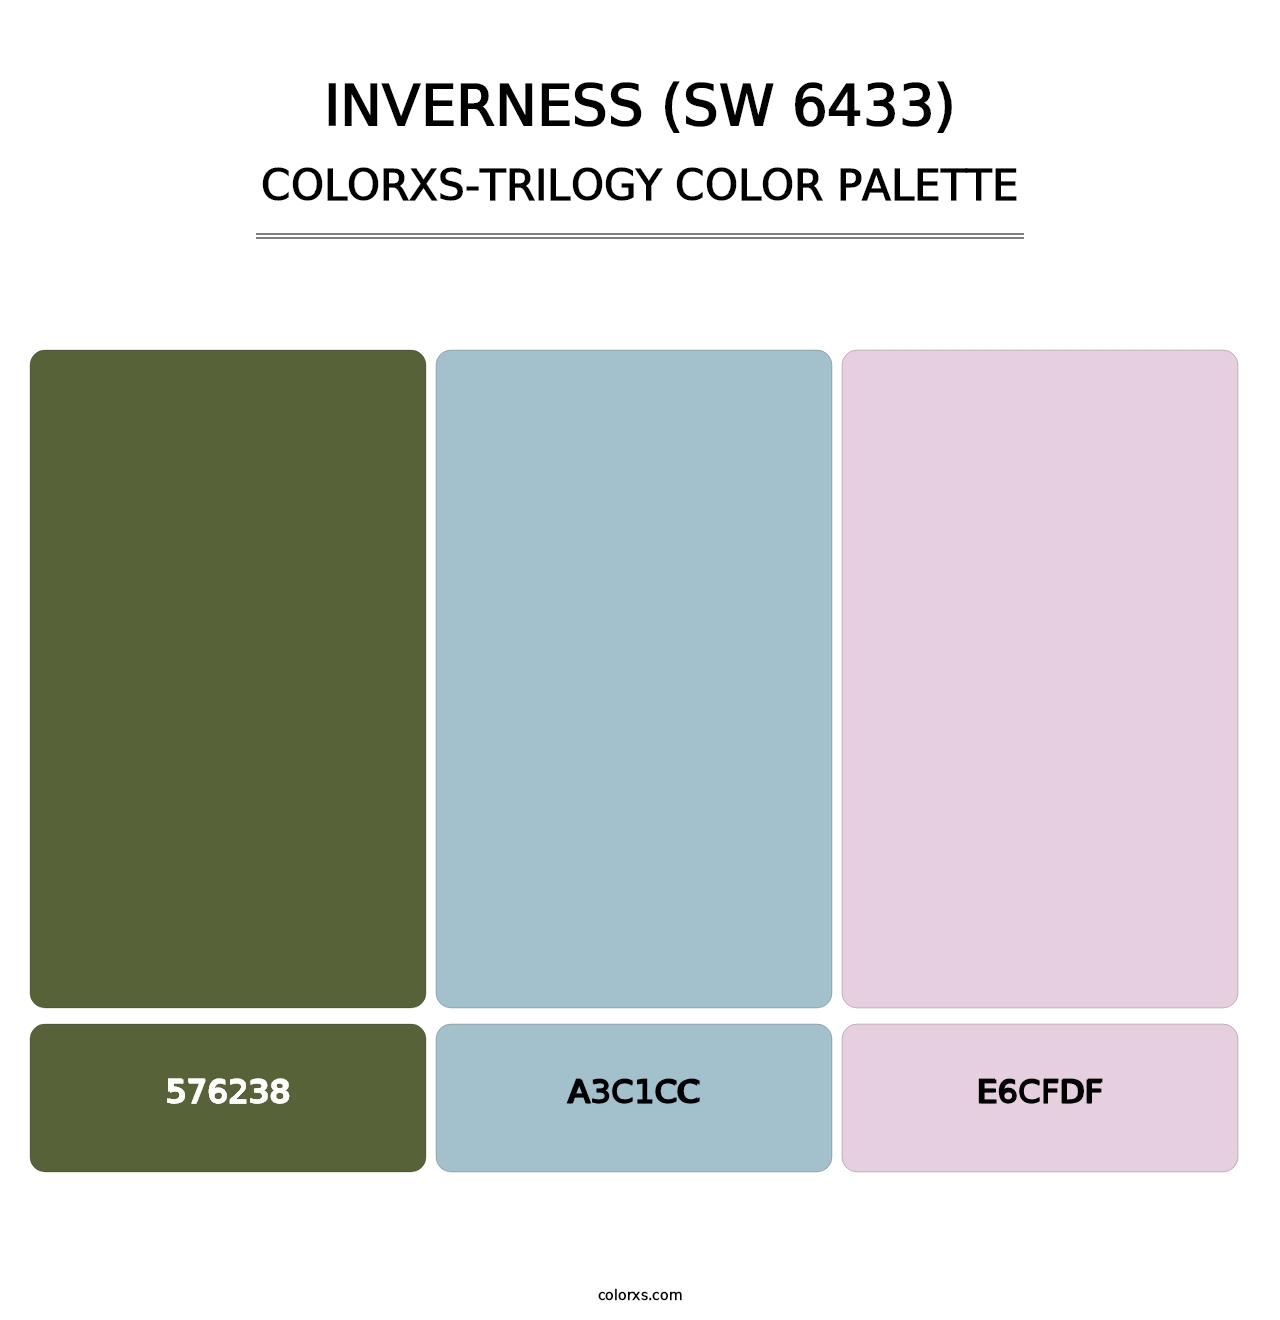 Inverness (SW 6433) - Colorxs Trilogy Palette